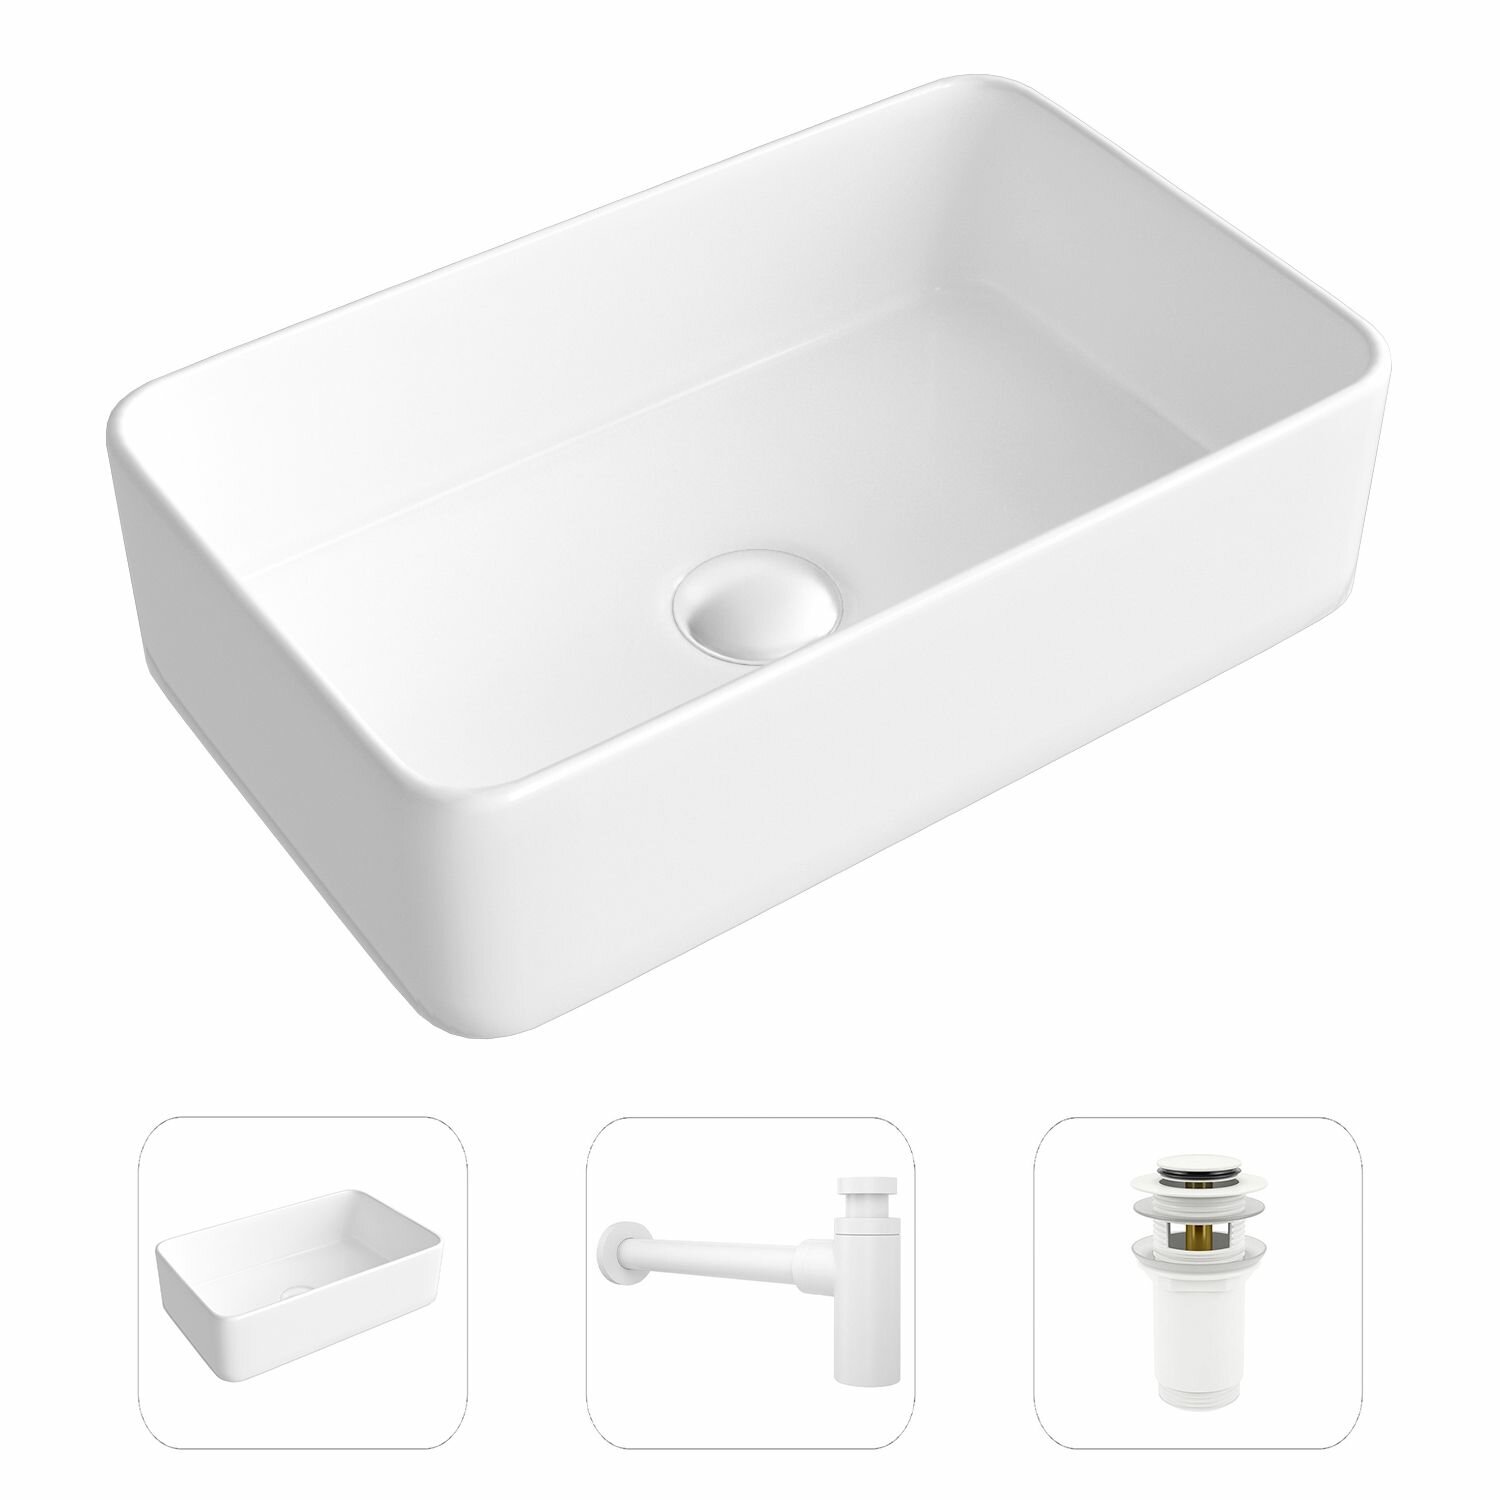 Накладная раковина в ванную Helmken 67448000 комплект 3 в 1: умывальник прямоугольный 48 см, сифон и донный клапан click-clack в цвете белый